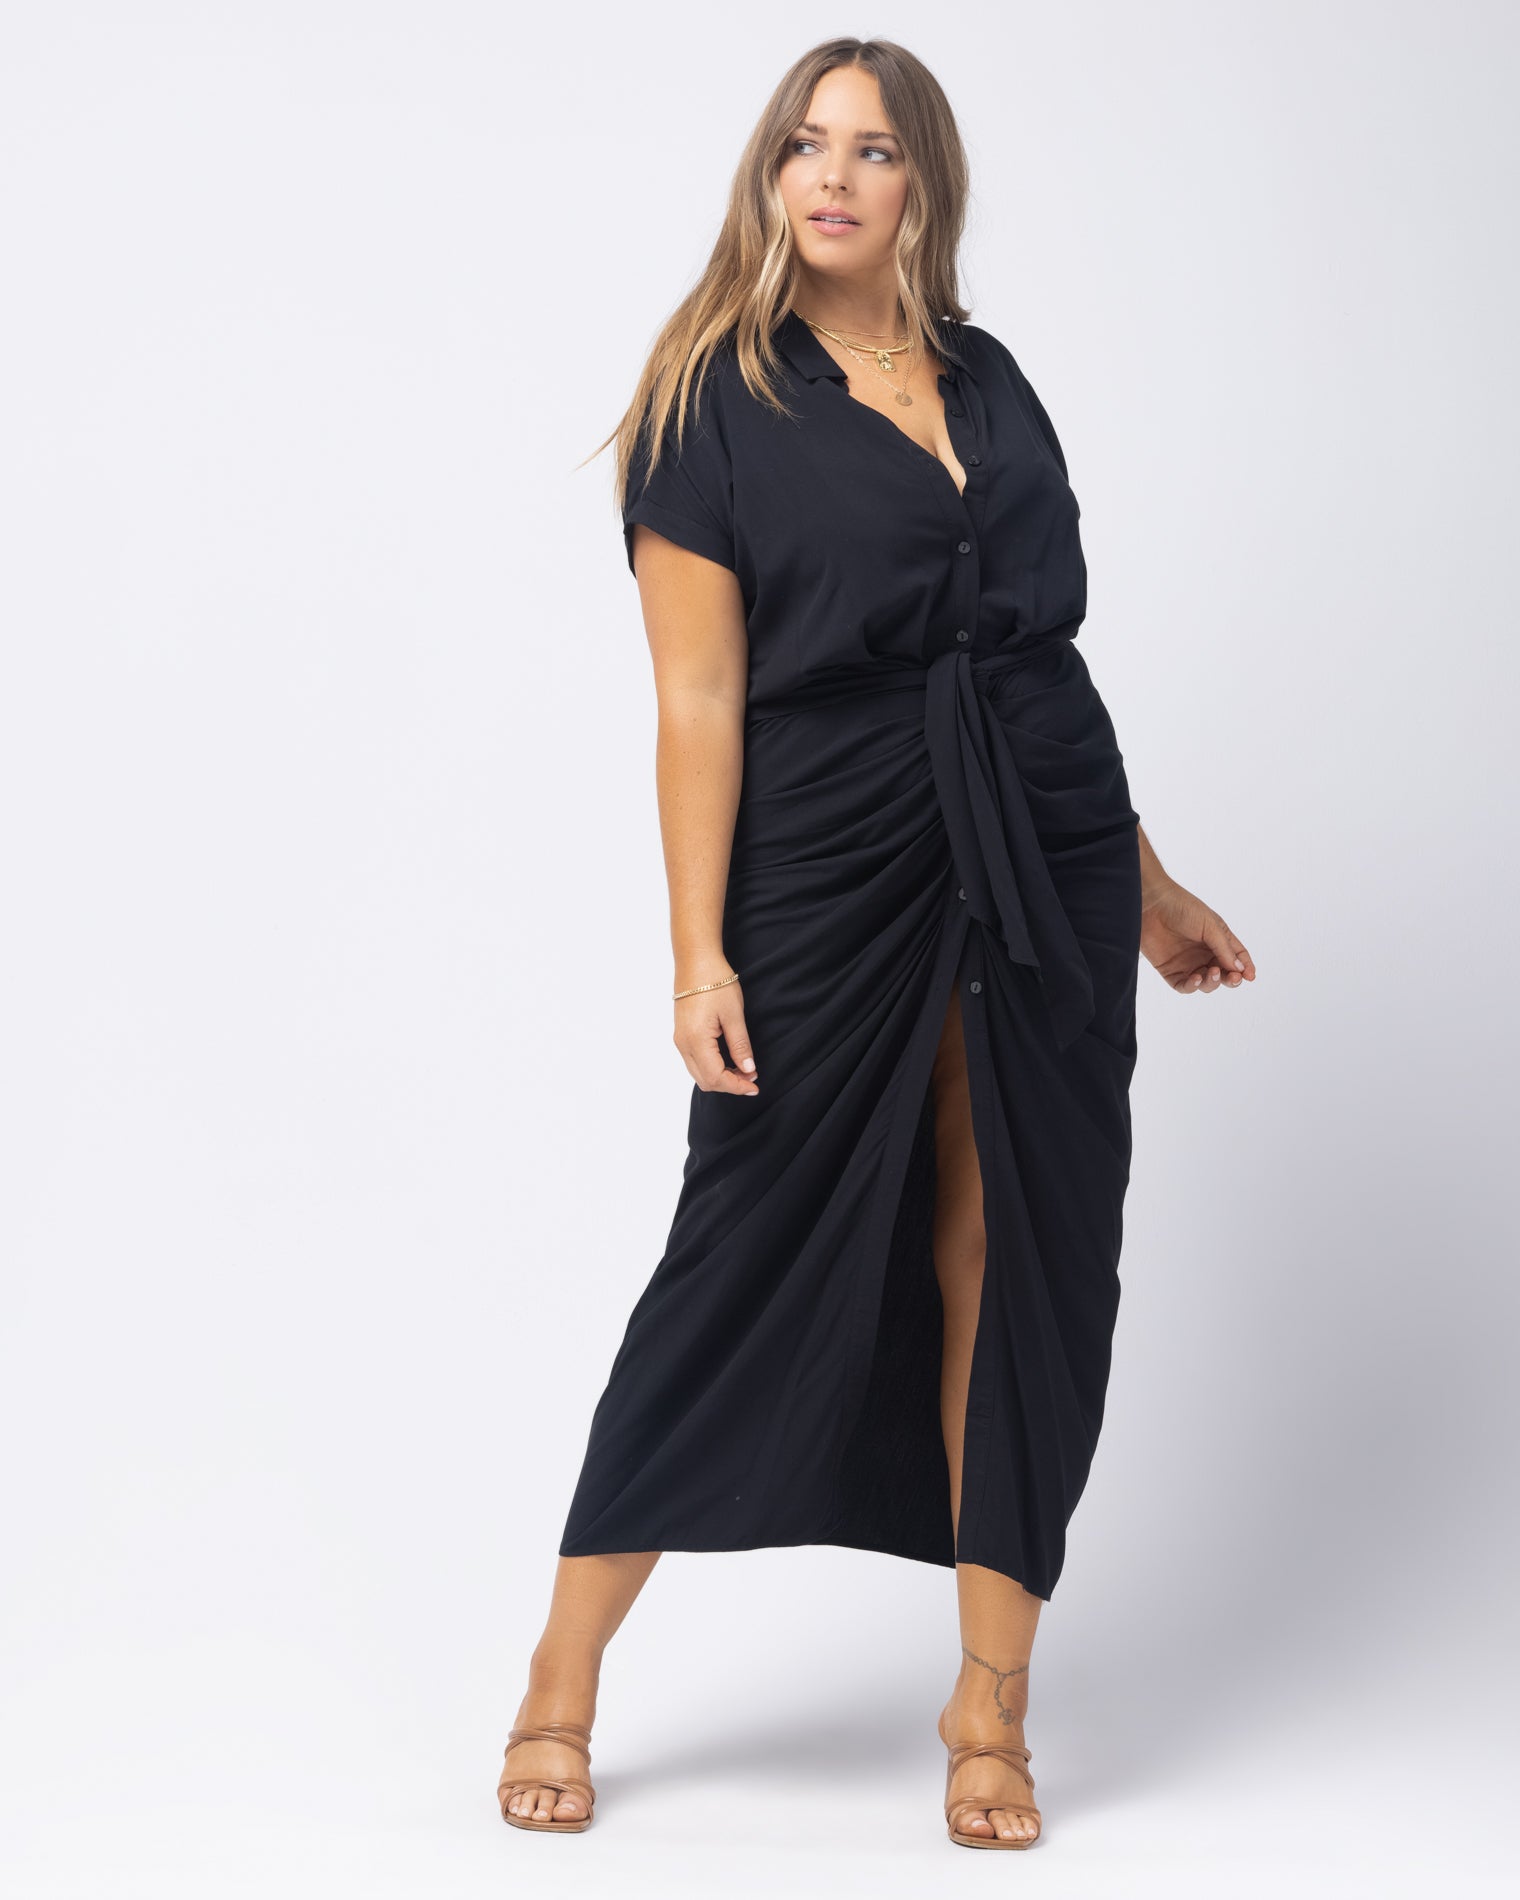 Prism Dress Black | Model: Ali (size: XL)